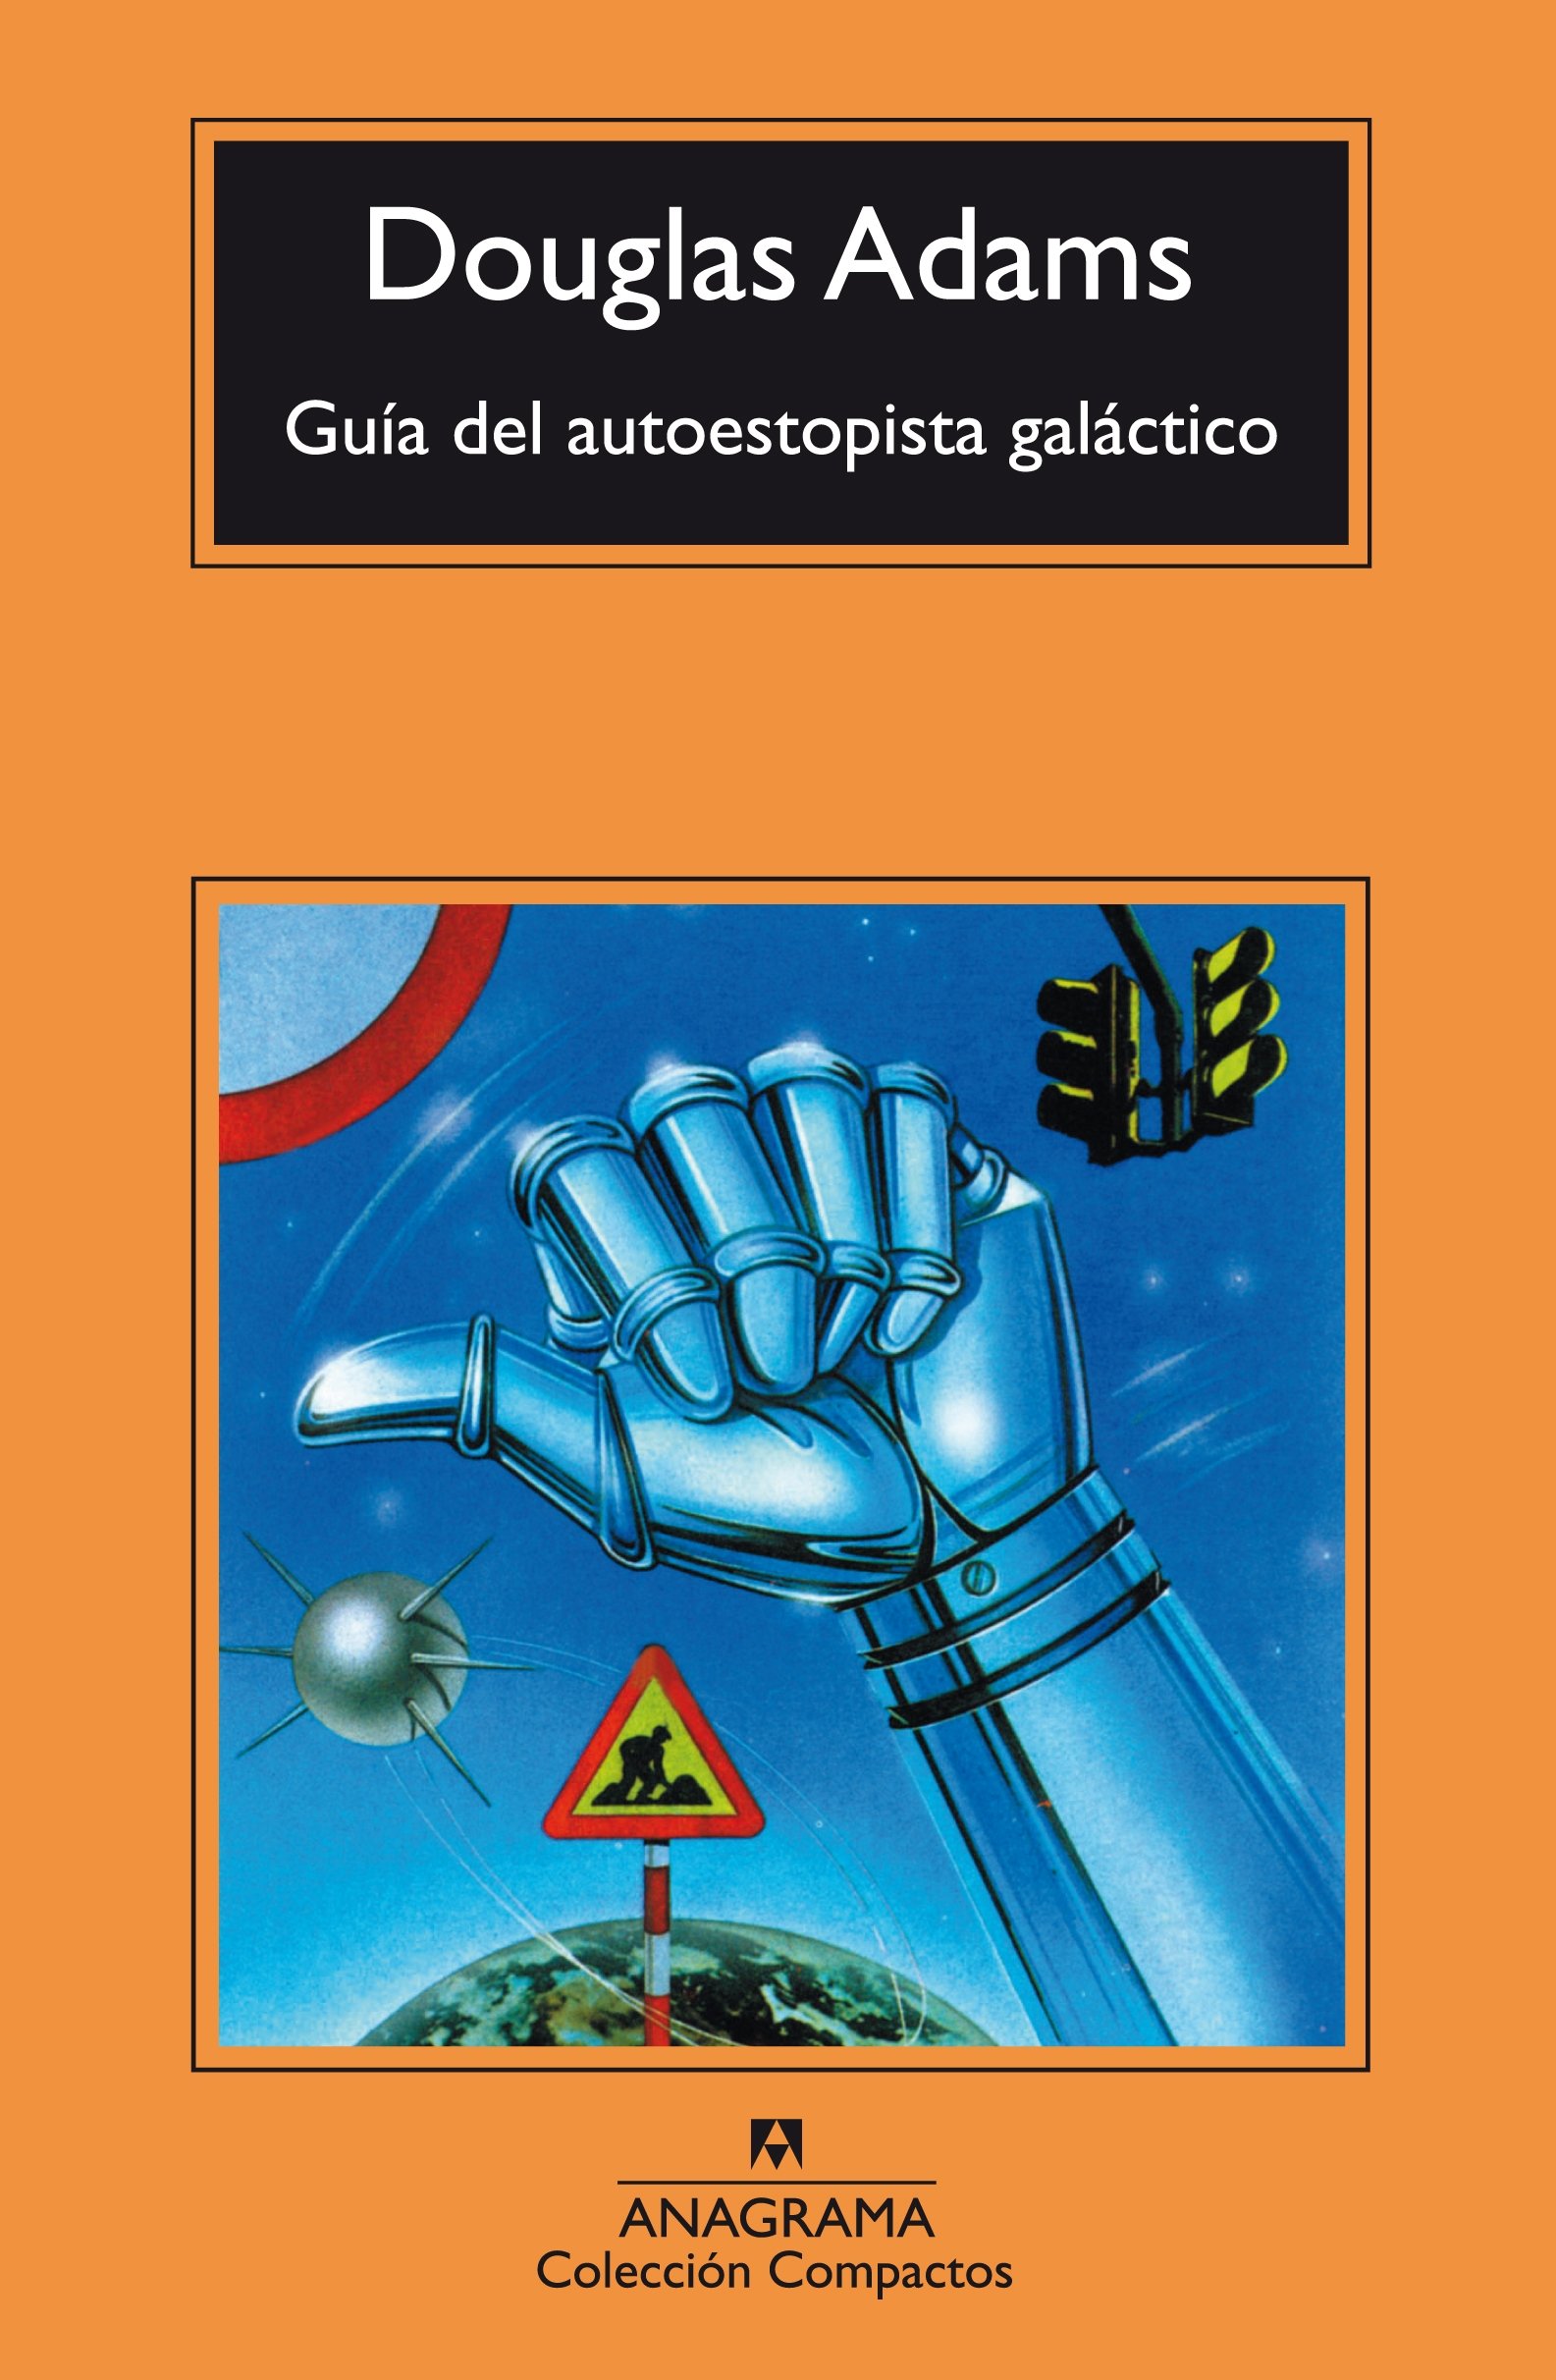 RESEÑA: Guía del autoestopista galáctico, de Douglas Adams